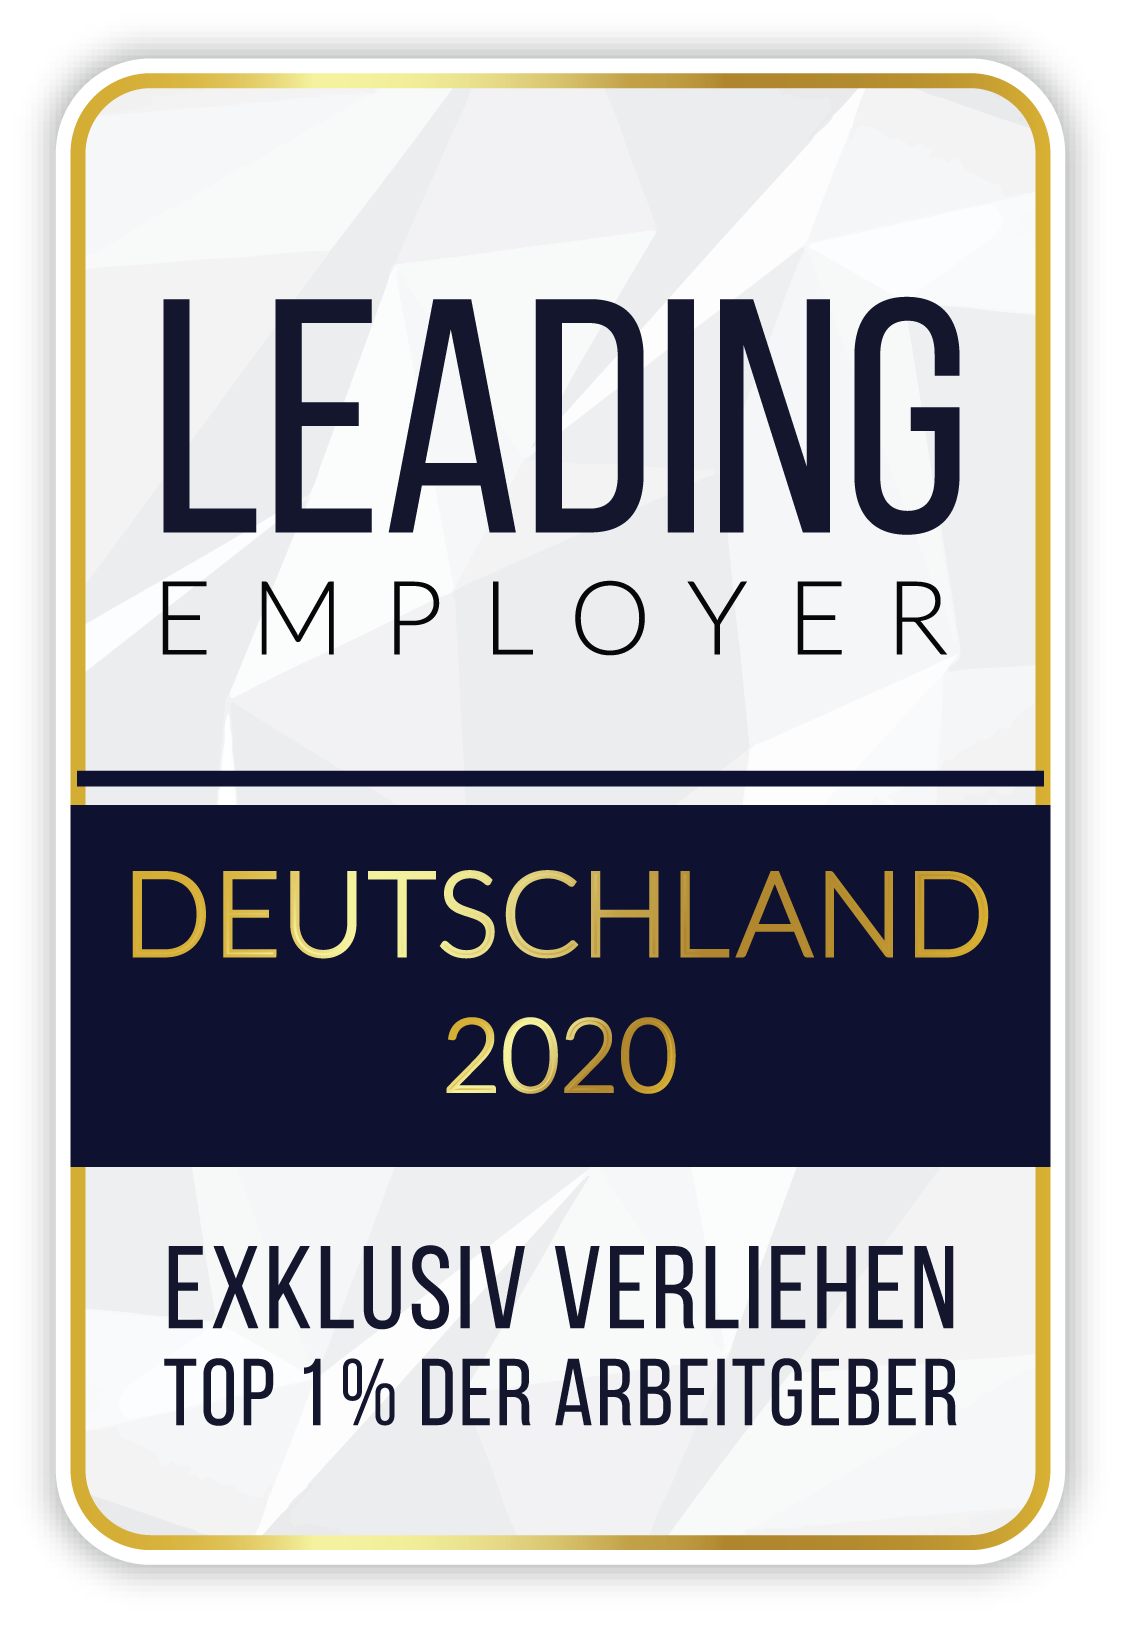 Leading Employer 2020 award logo